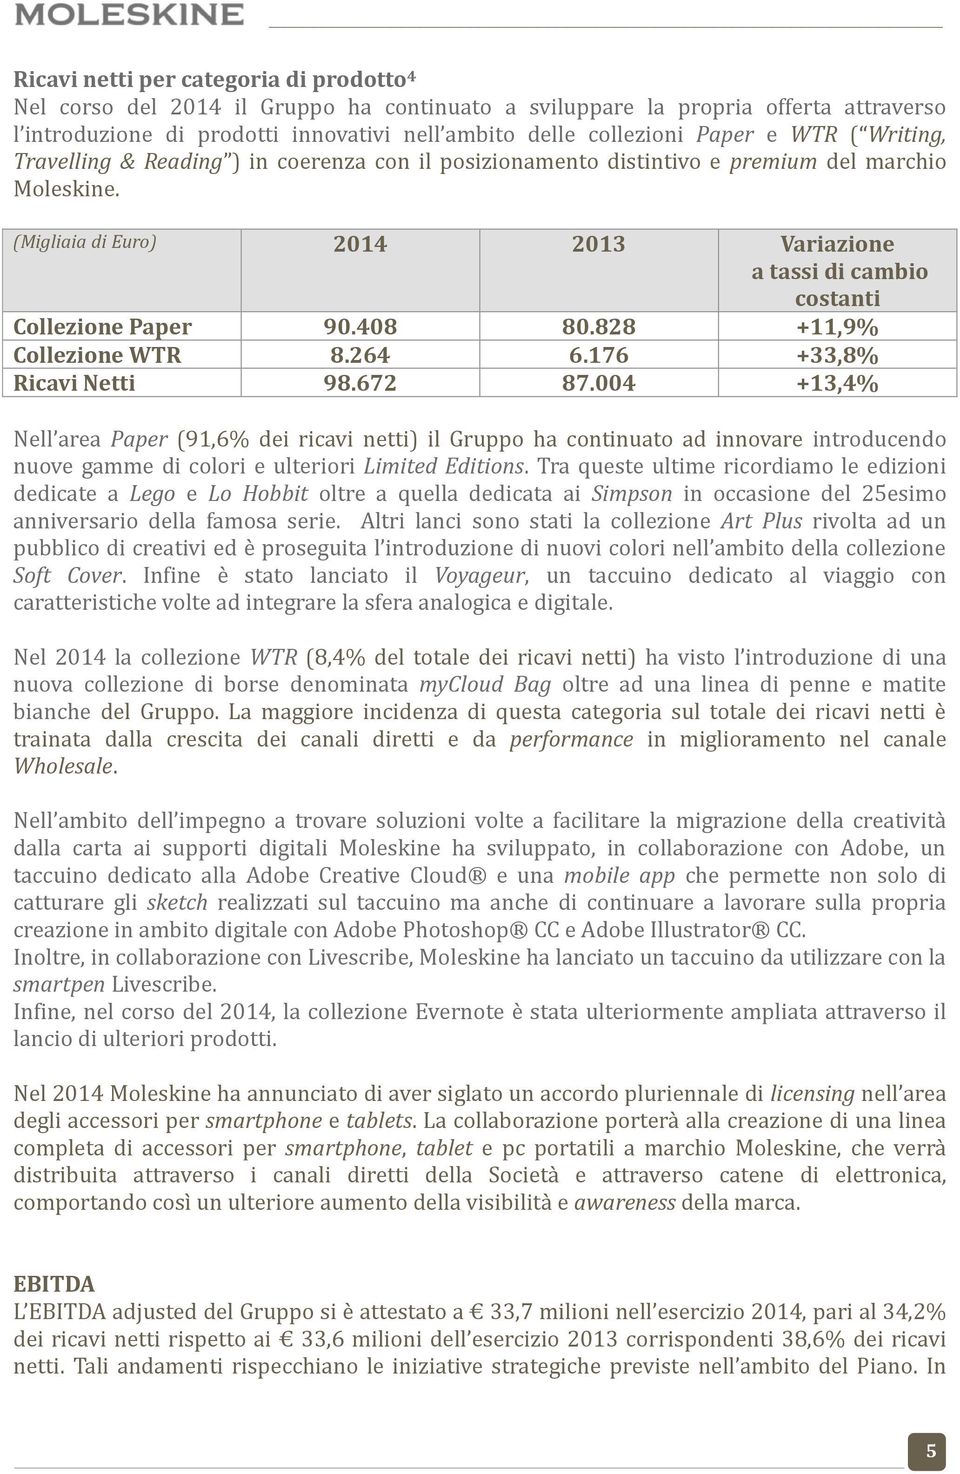 (Migliaia di Euro) 2014 2013 Variazione a tassi di cambio costanti Collezione Paper 90.408 80.828 +11,9% Collezione WTR 8.264 6.176 +33,8% Ricavi Netti 98.672 87.